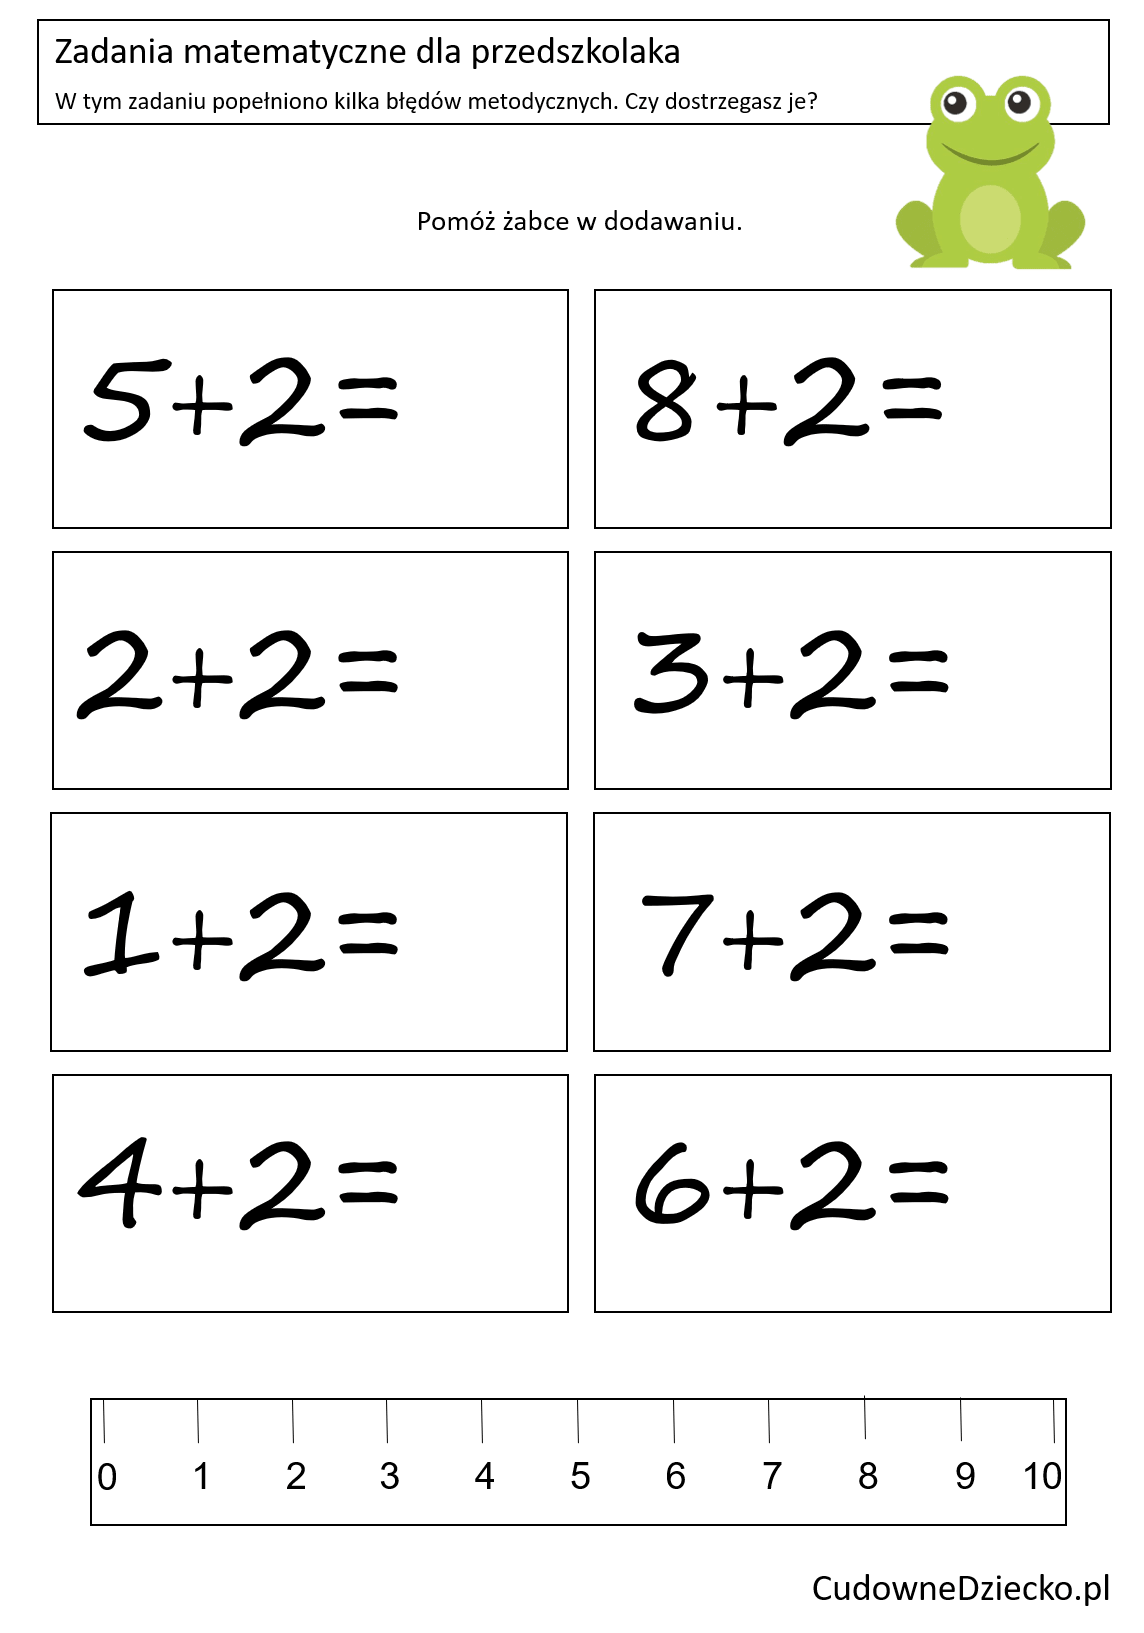 Zadania Matematyczne Dla Przedszkolaków Dziecko 5 Lat Dodawanie do 10